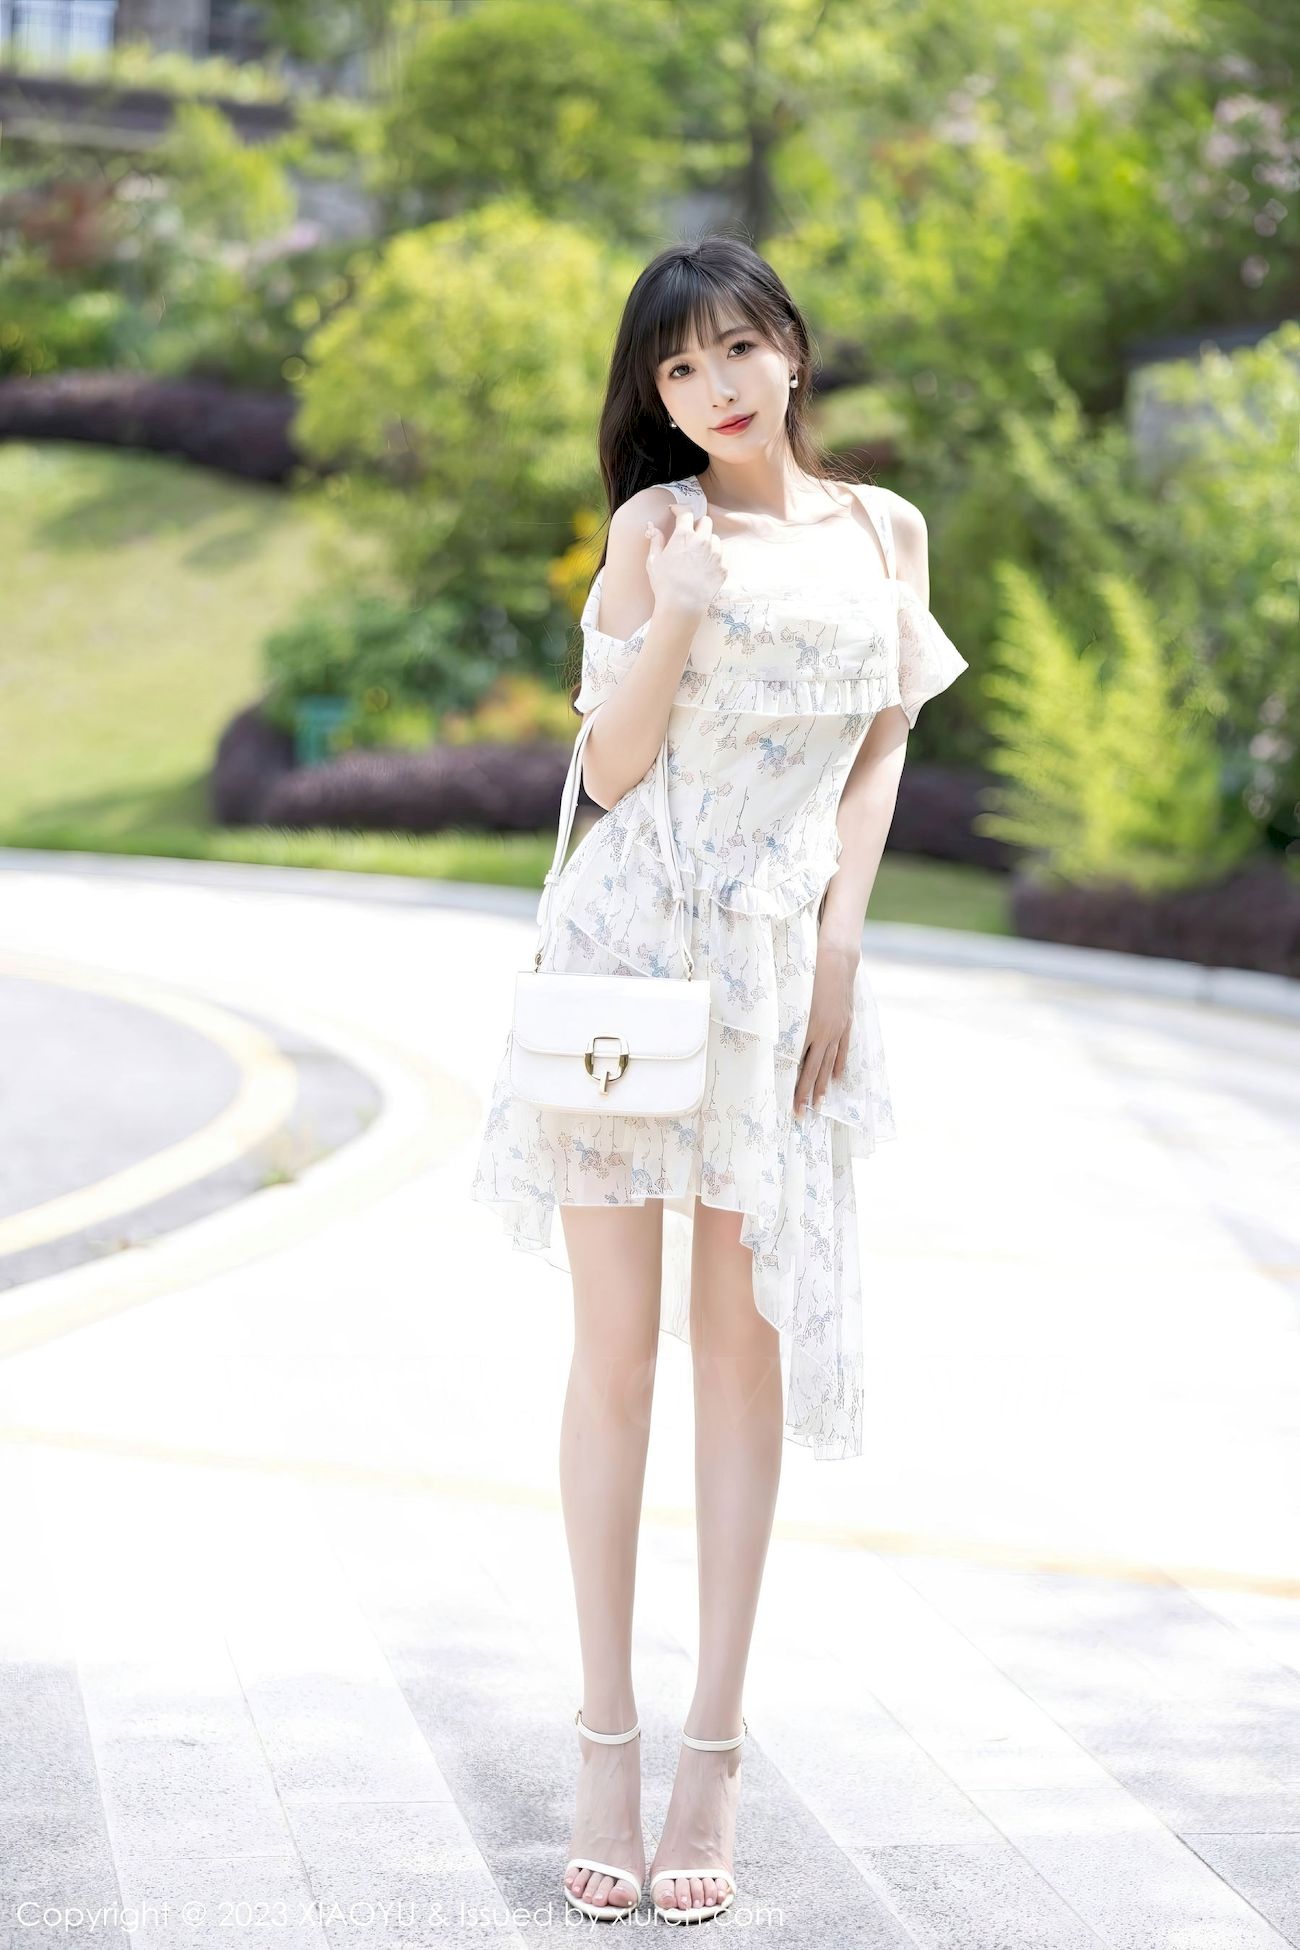 林星阑 - 婚纱服饰+白色丝袜贵州旅拍 